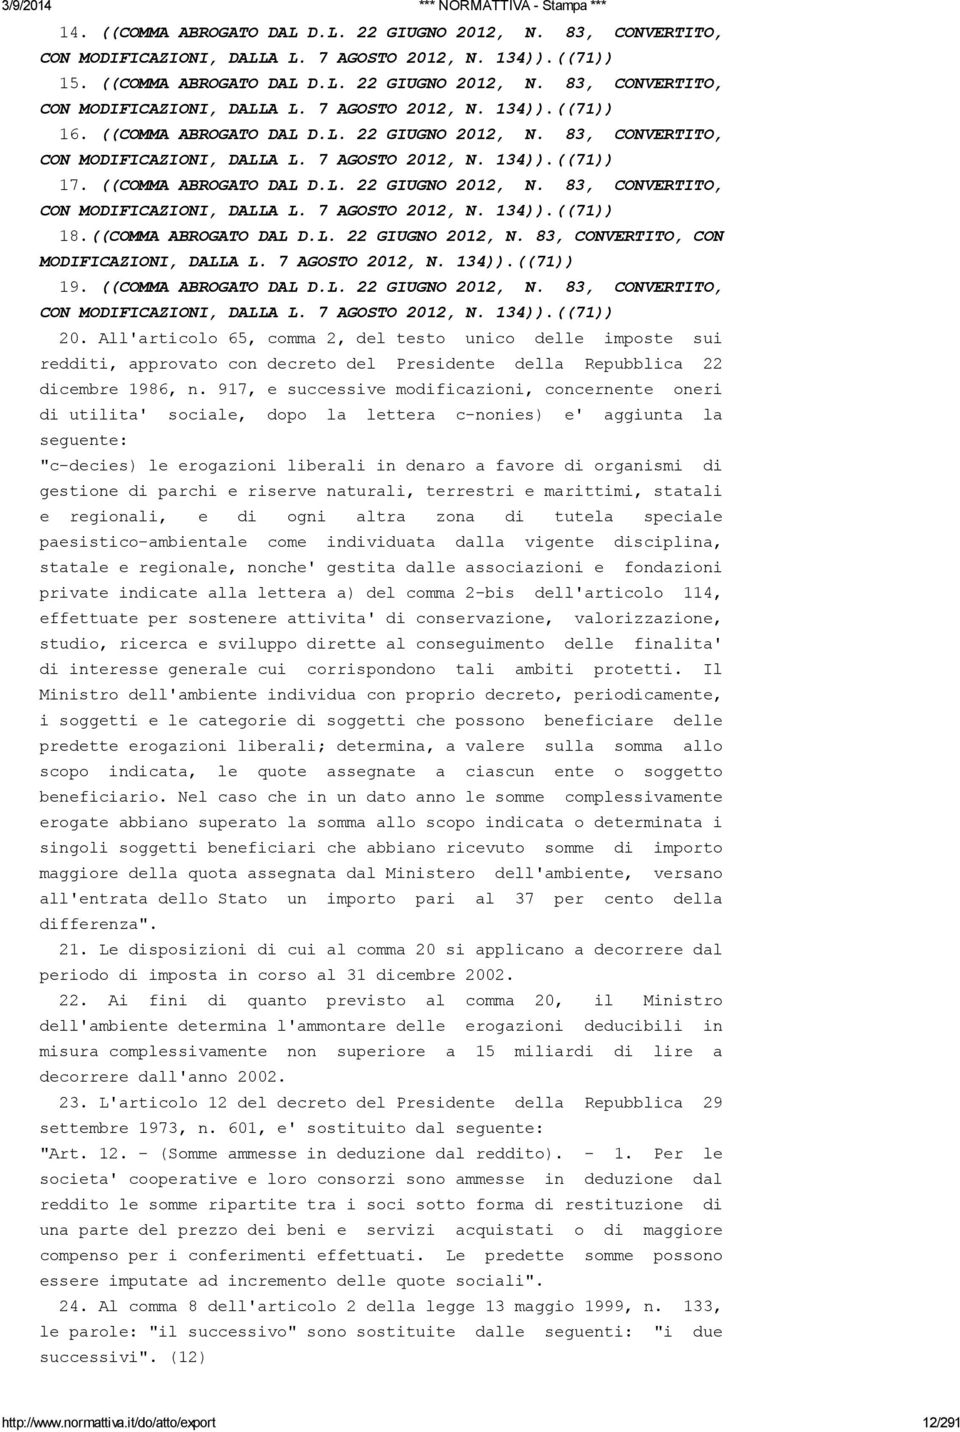 ((COMMA ABROGATO DAL D.L. 22 GIUGNO 2012, N. 83, CONVERTITO, CON MODIFICAZIONI, DALLA L. 7 AGOSTO 2012, N. 134)).((71)) 19. ((COMMA ABROGATO DAL D.L. 22 GIUGNO 2012, N. 83, CONVERTITO, CON MODIFICAZIONI, DALLA L. 7 AGOSTO 2012, N. 134)).((71)) 20.